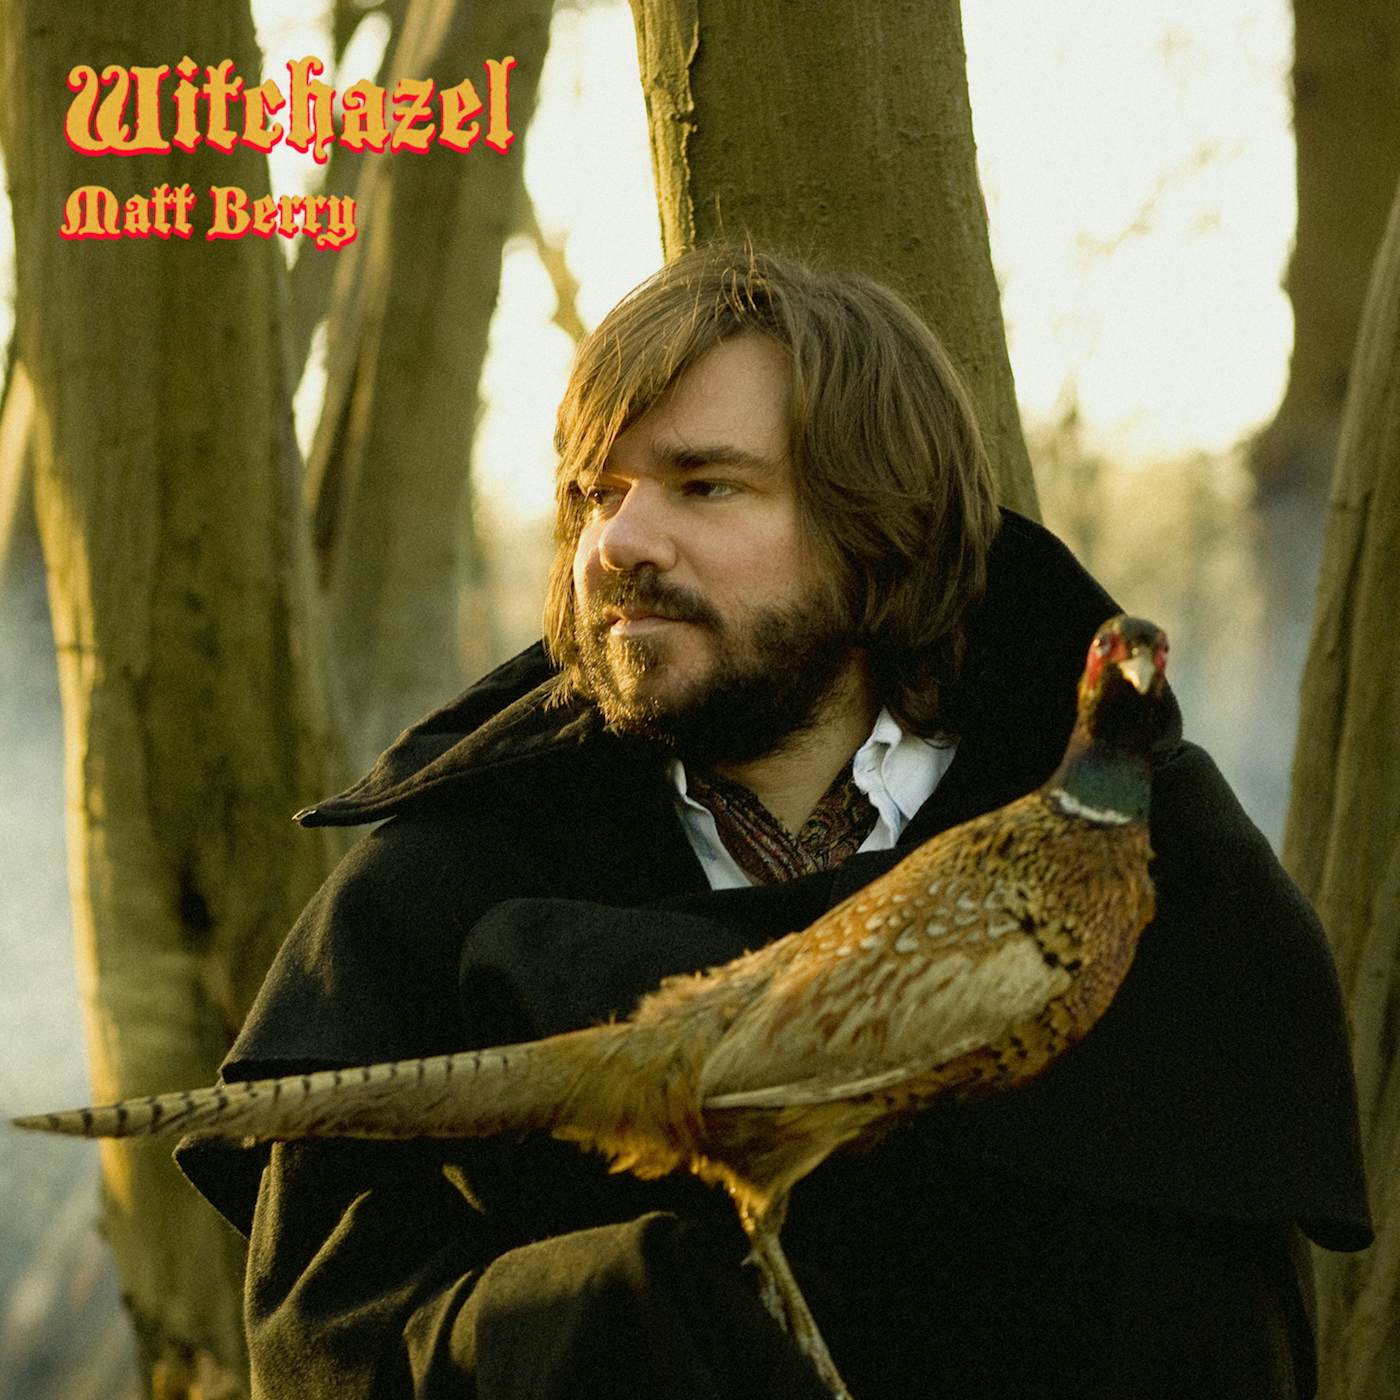 Matt Berry Witchazel (Caramel Vinyl) Vinyl Record